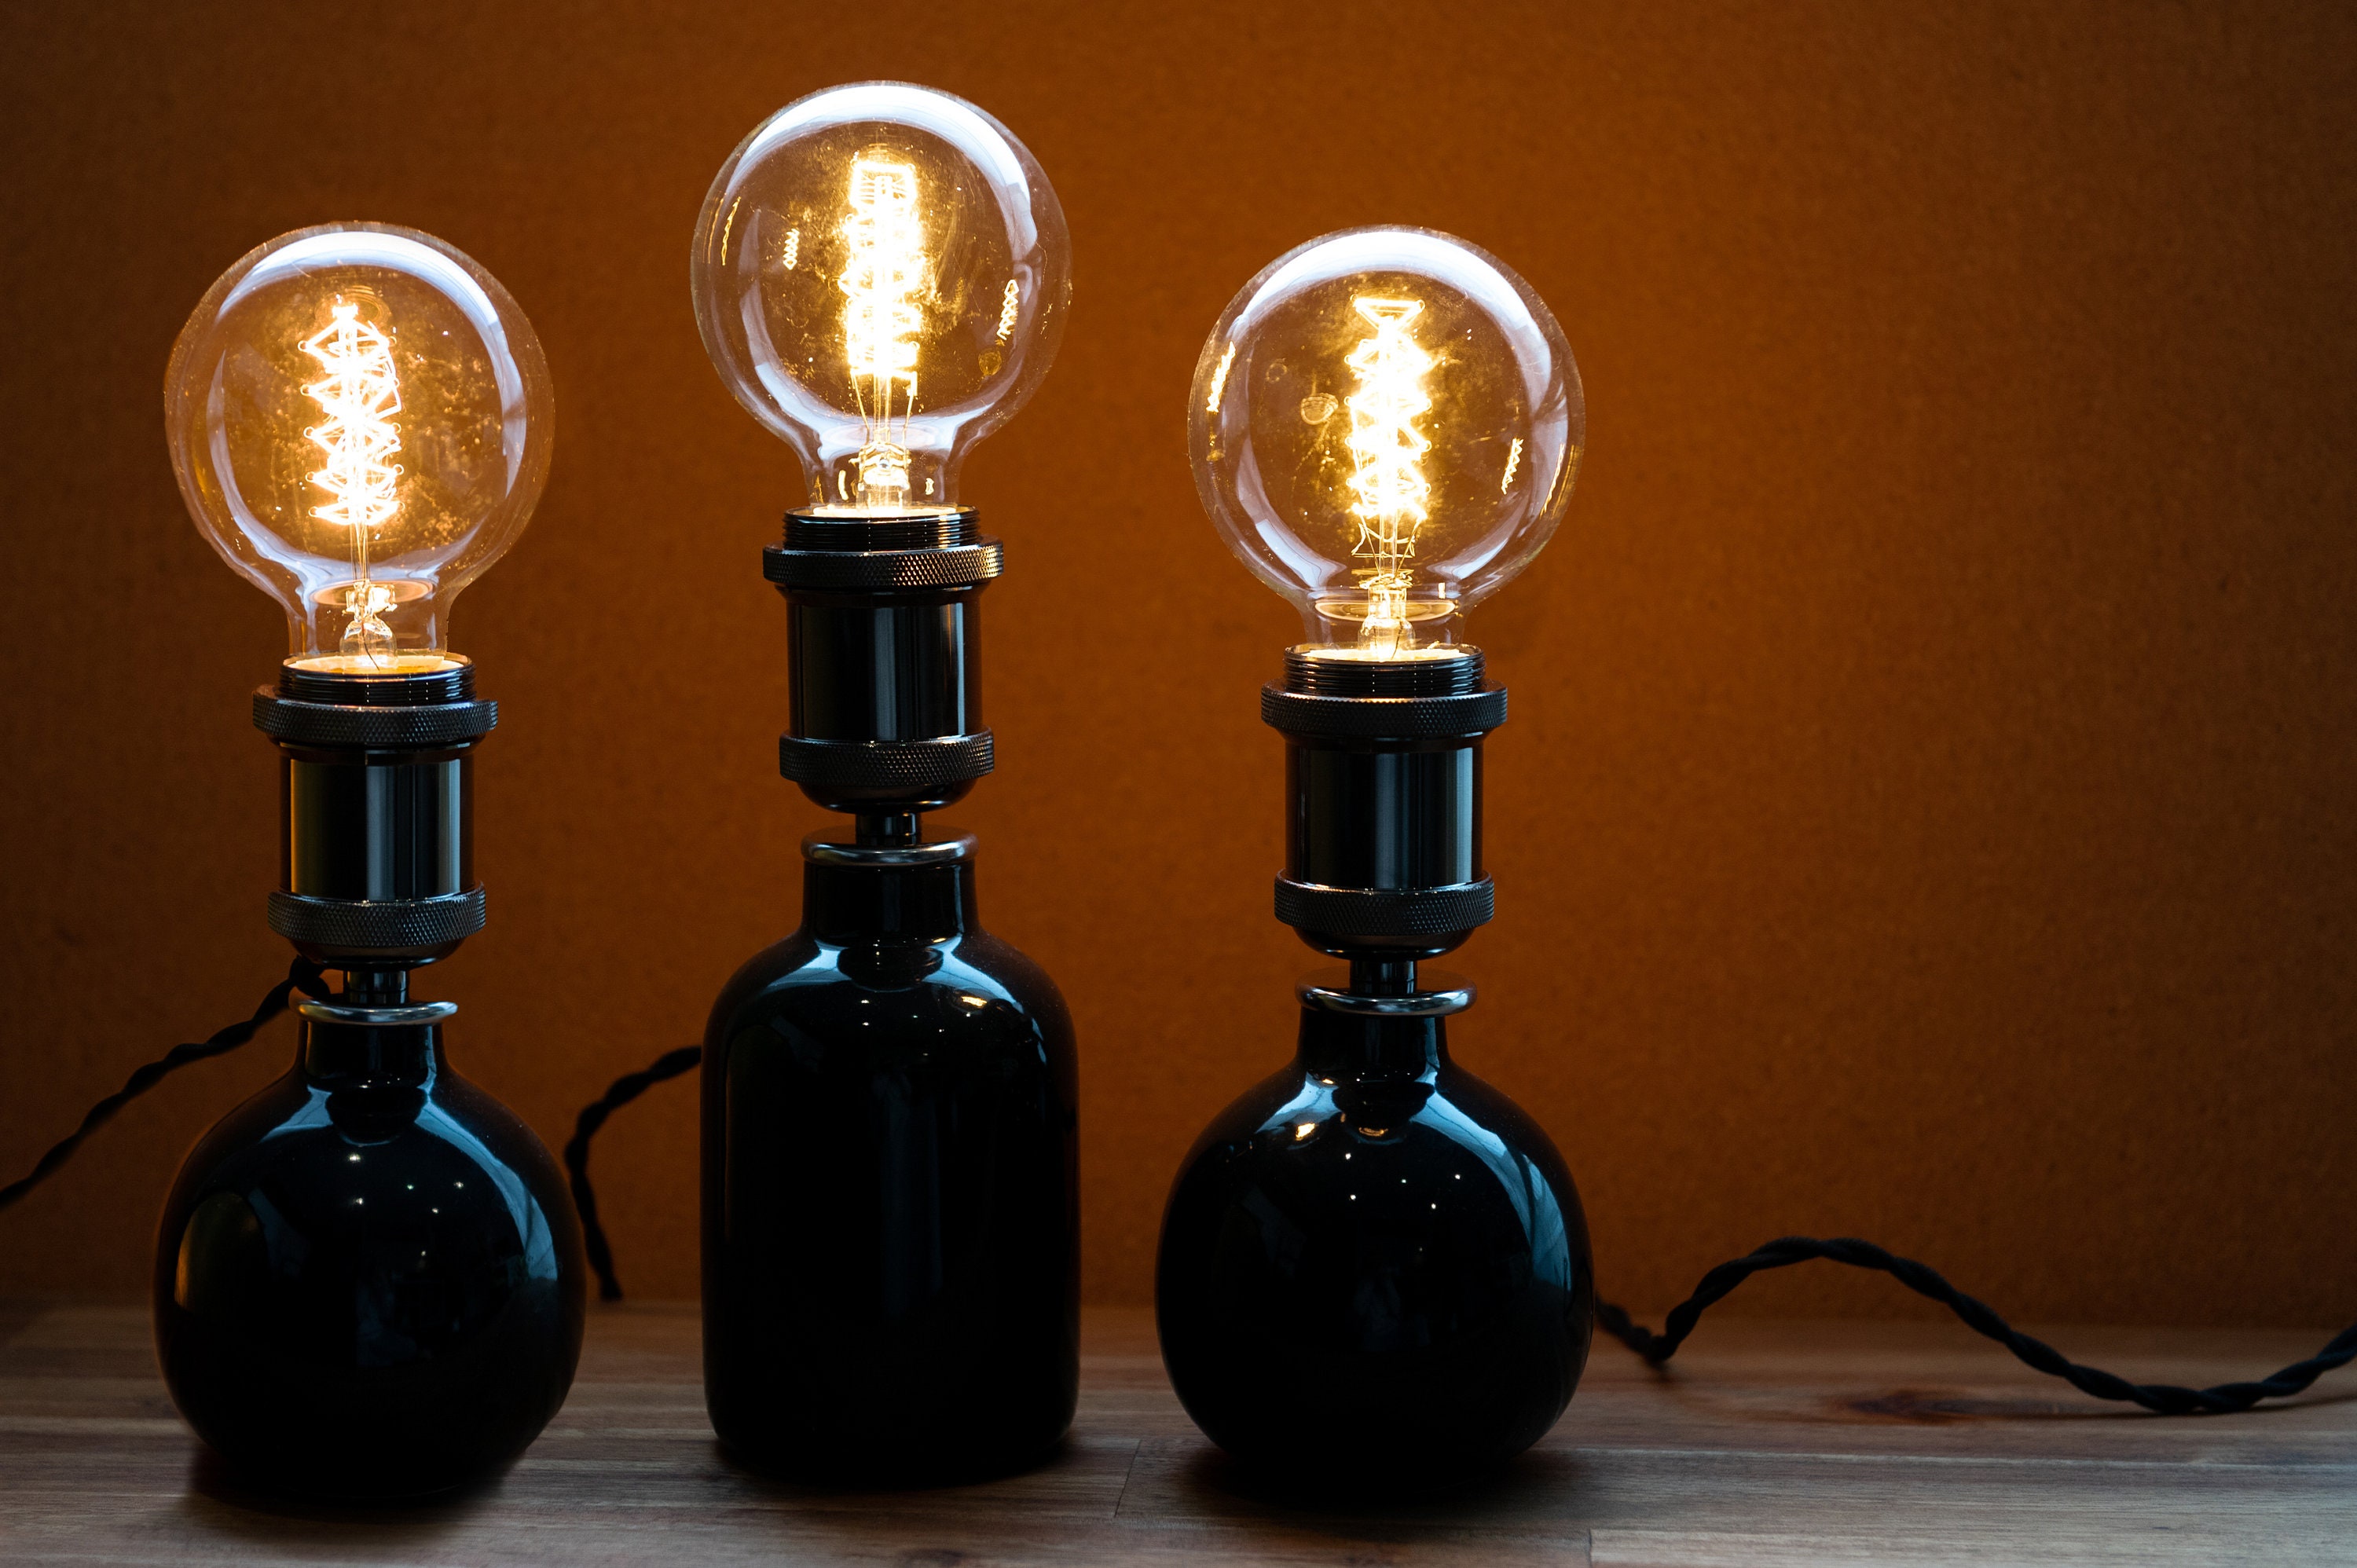 DIY Bottle Lamp Kit instructions